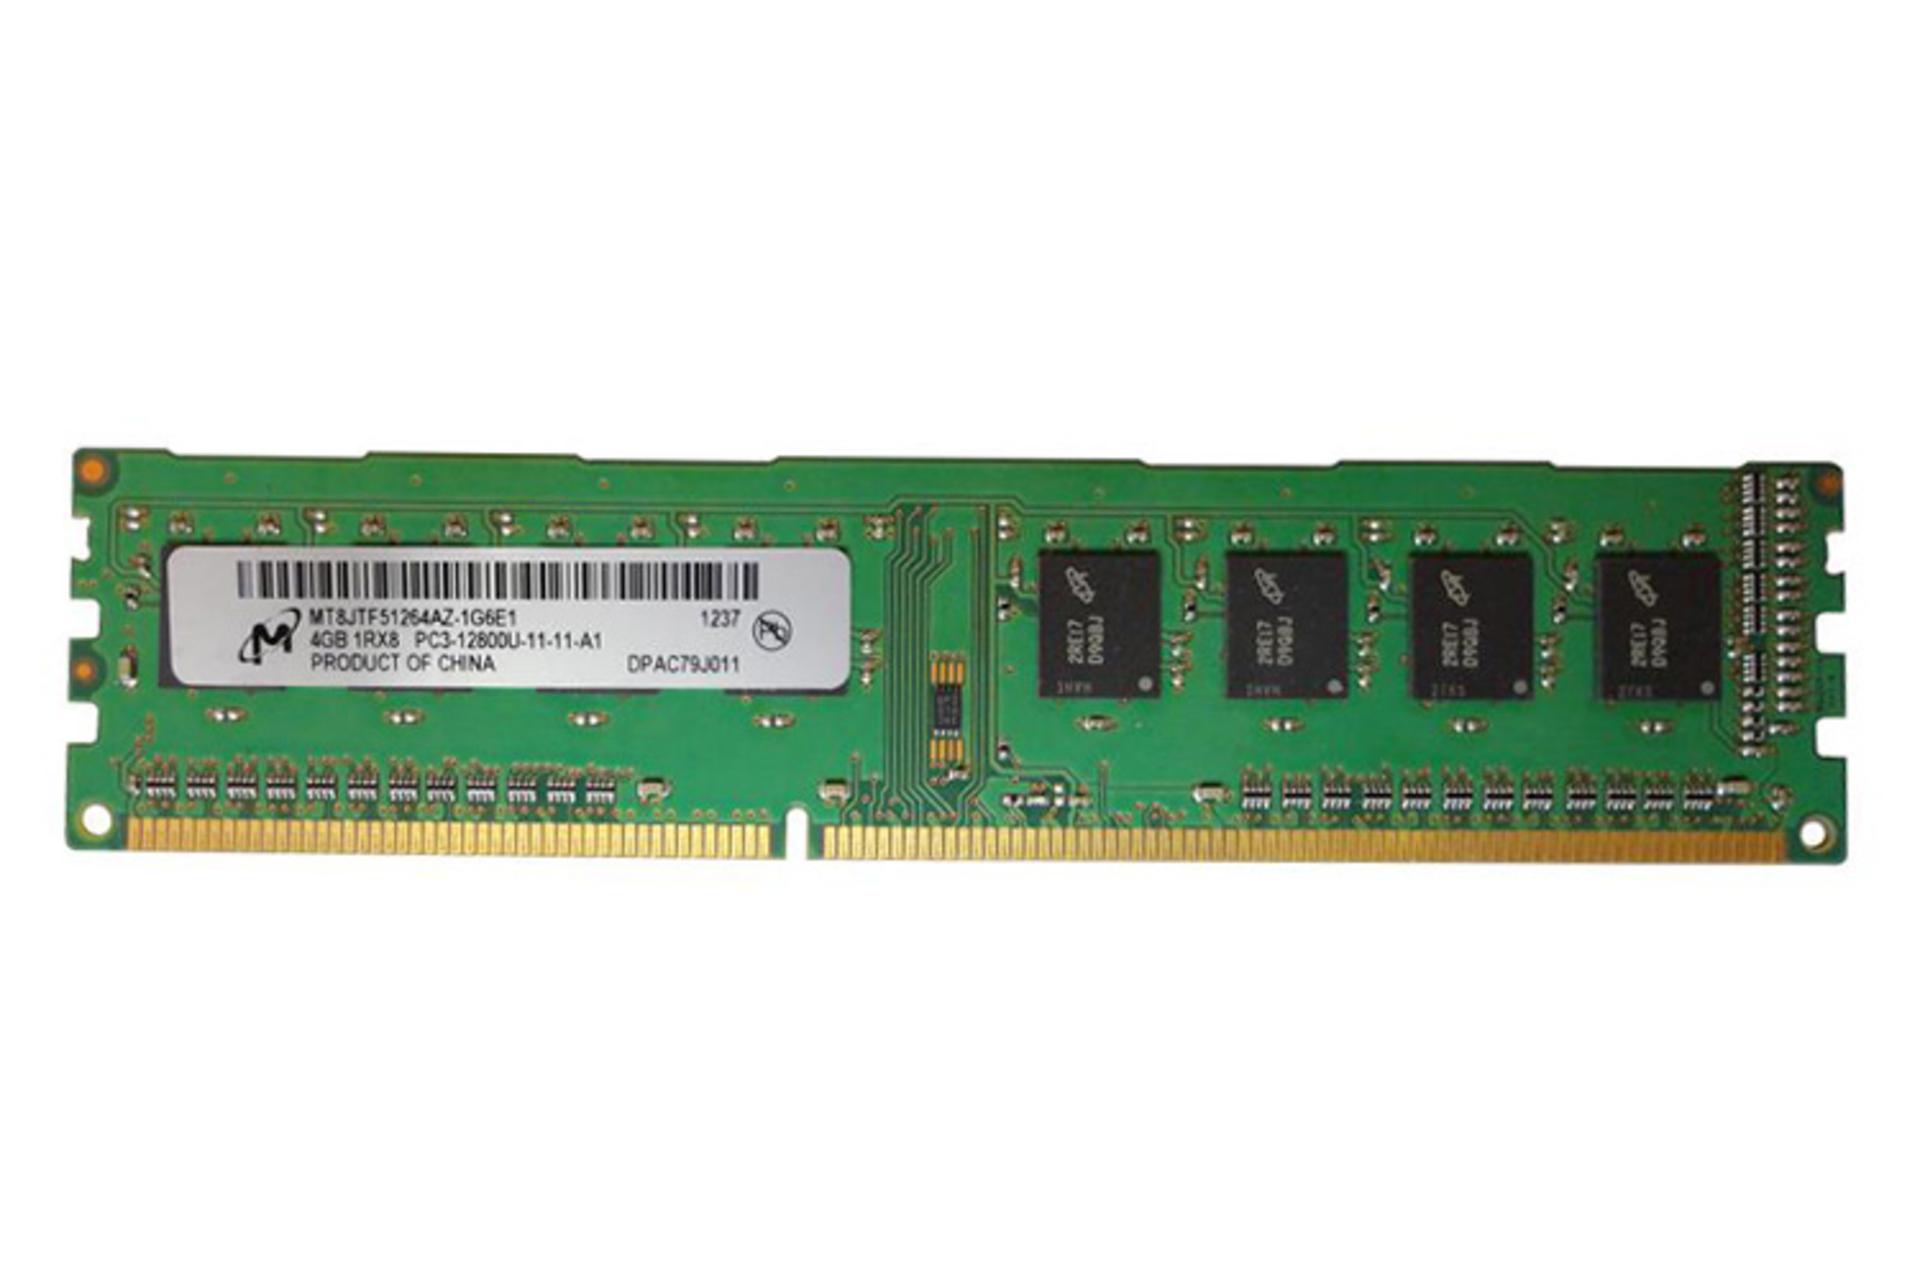 رم مایکرون Micron MT8JTF51264AZ-1G6E1 4GB DDR3-1600 CL11